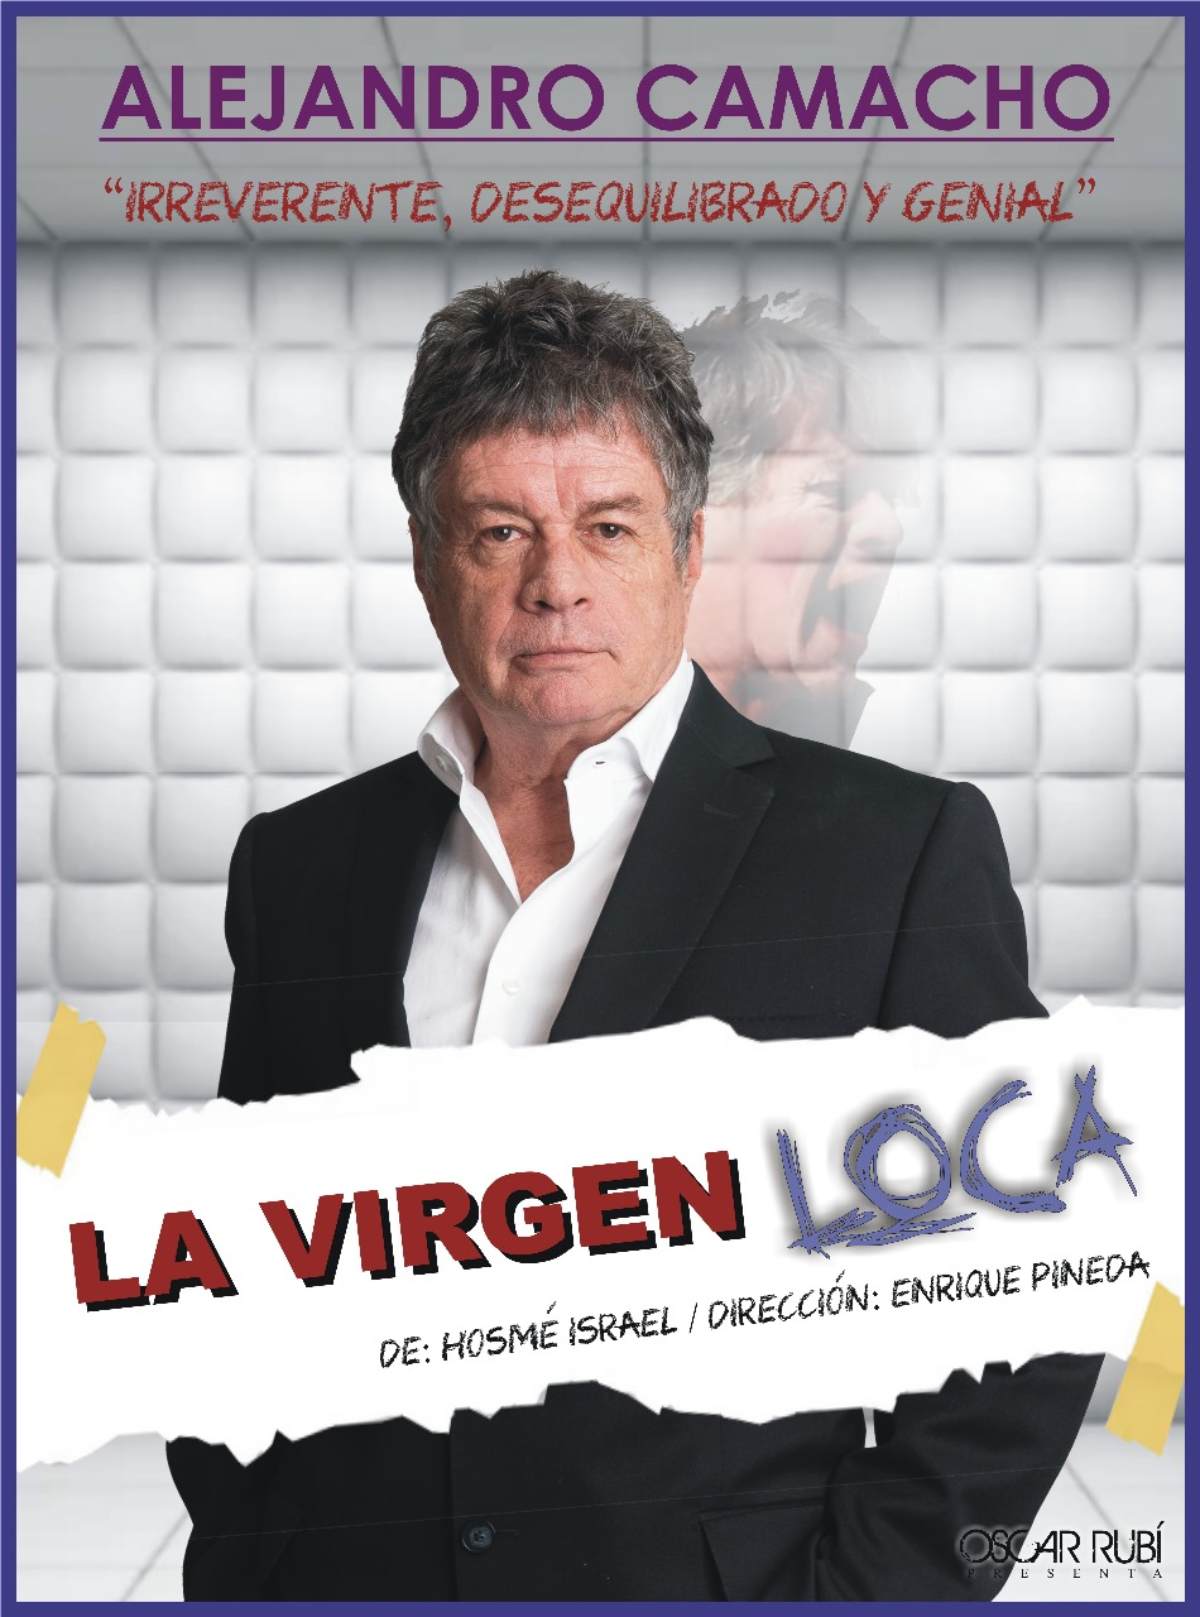 Alejandro Camacho regresa con ‘La Virgen Loca’: Una gira nacional llena de humor y drama 0